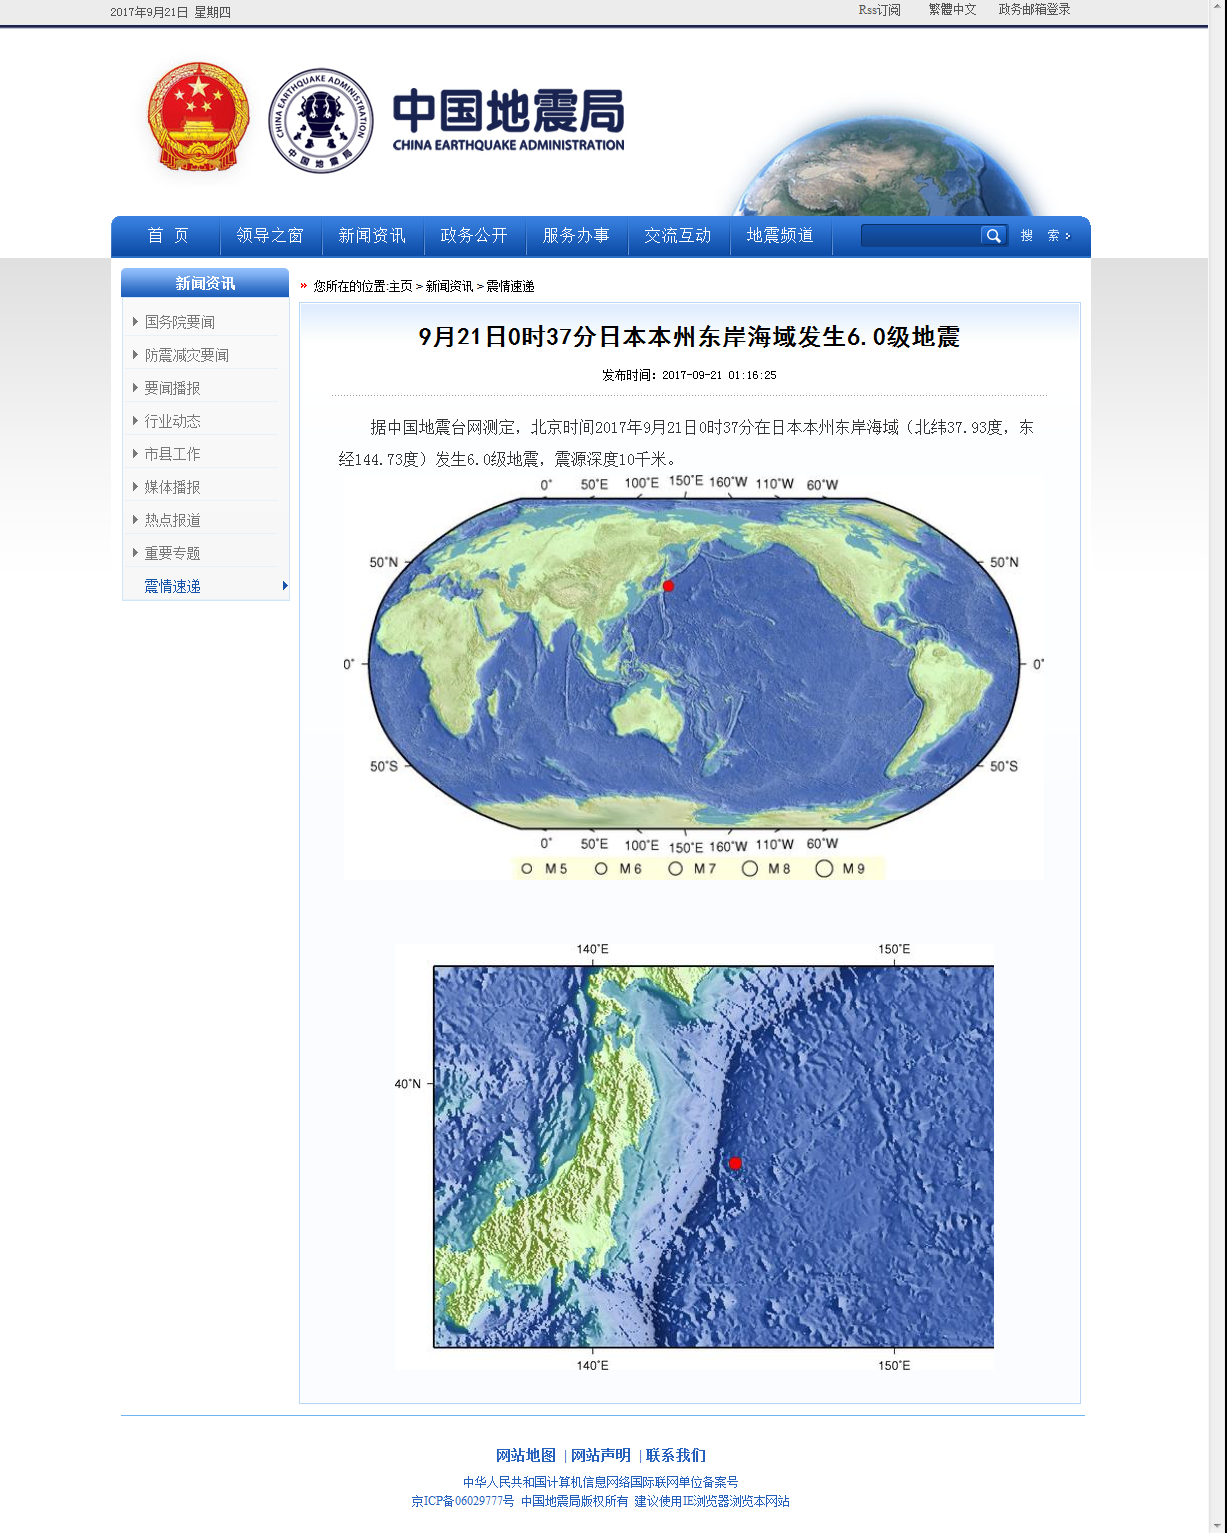 9月21日0时37分日本本州东岸海域发生6.0级地震.png